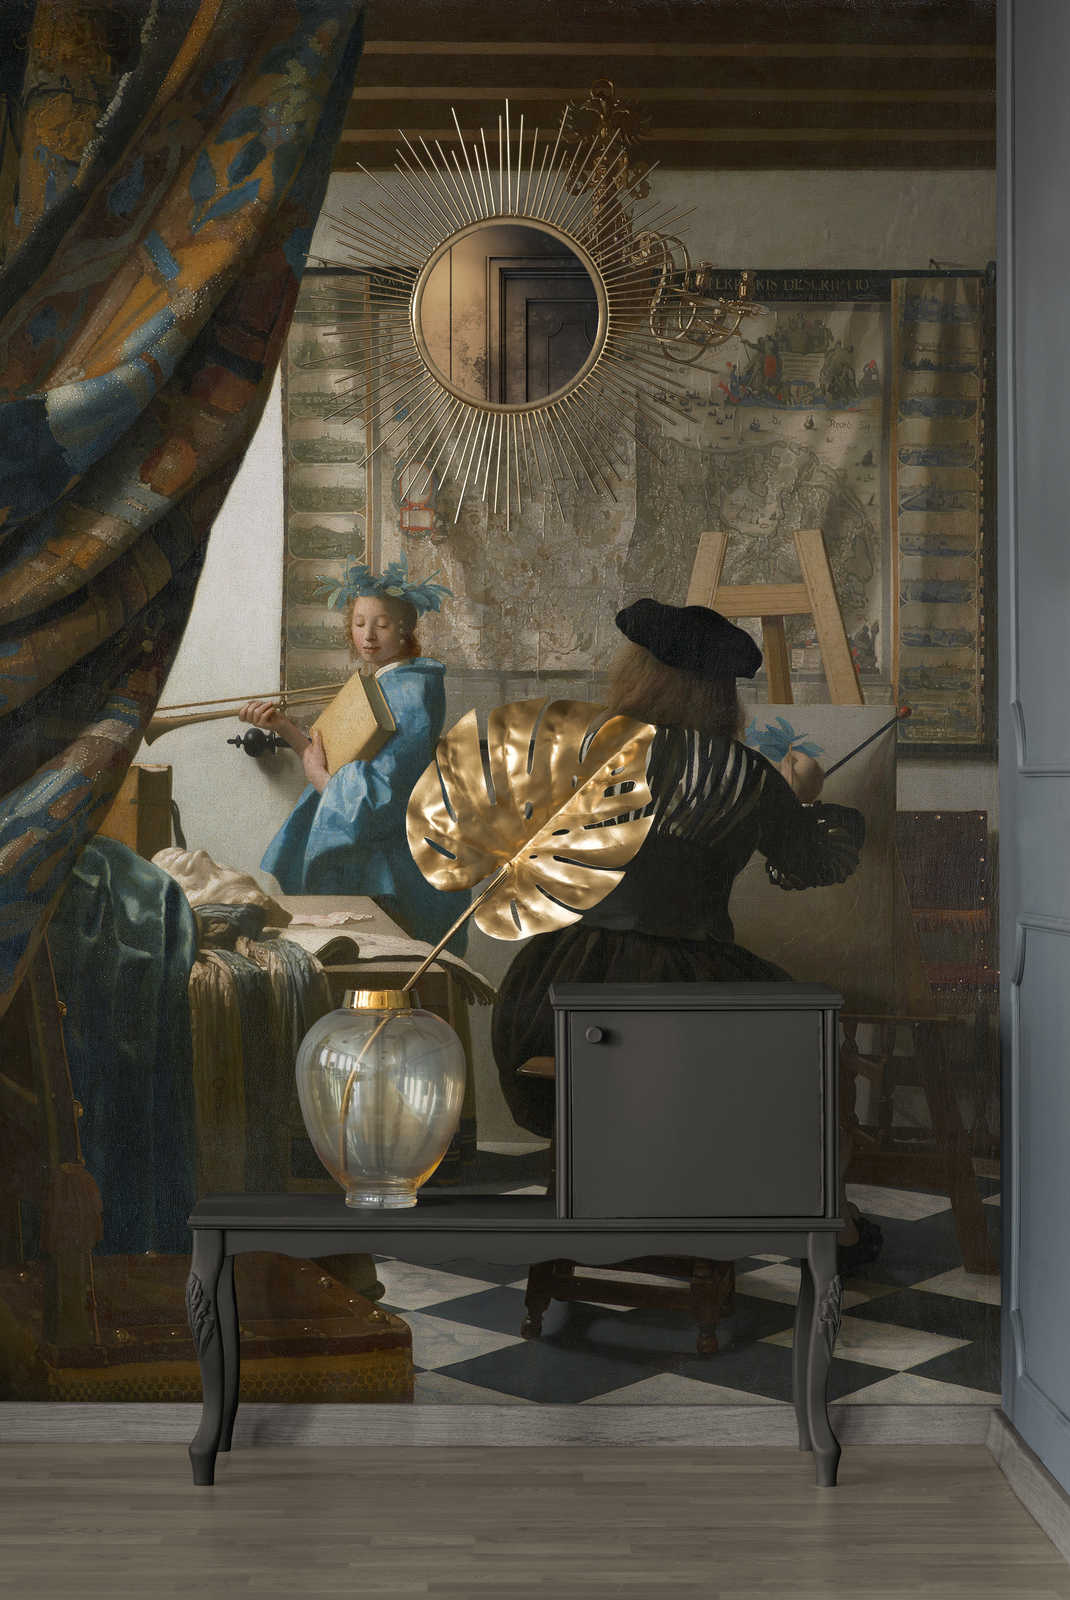             Papier peint panoramique "Vermeer dans son atelier" de Jan Vermeer
        